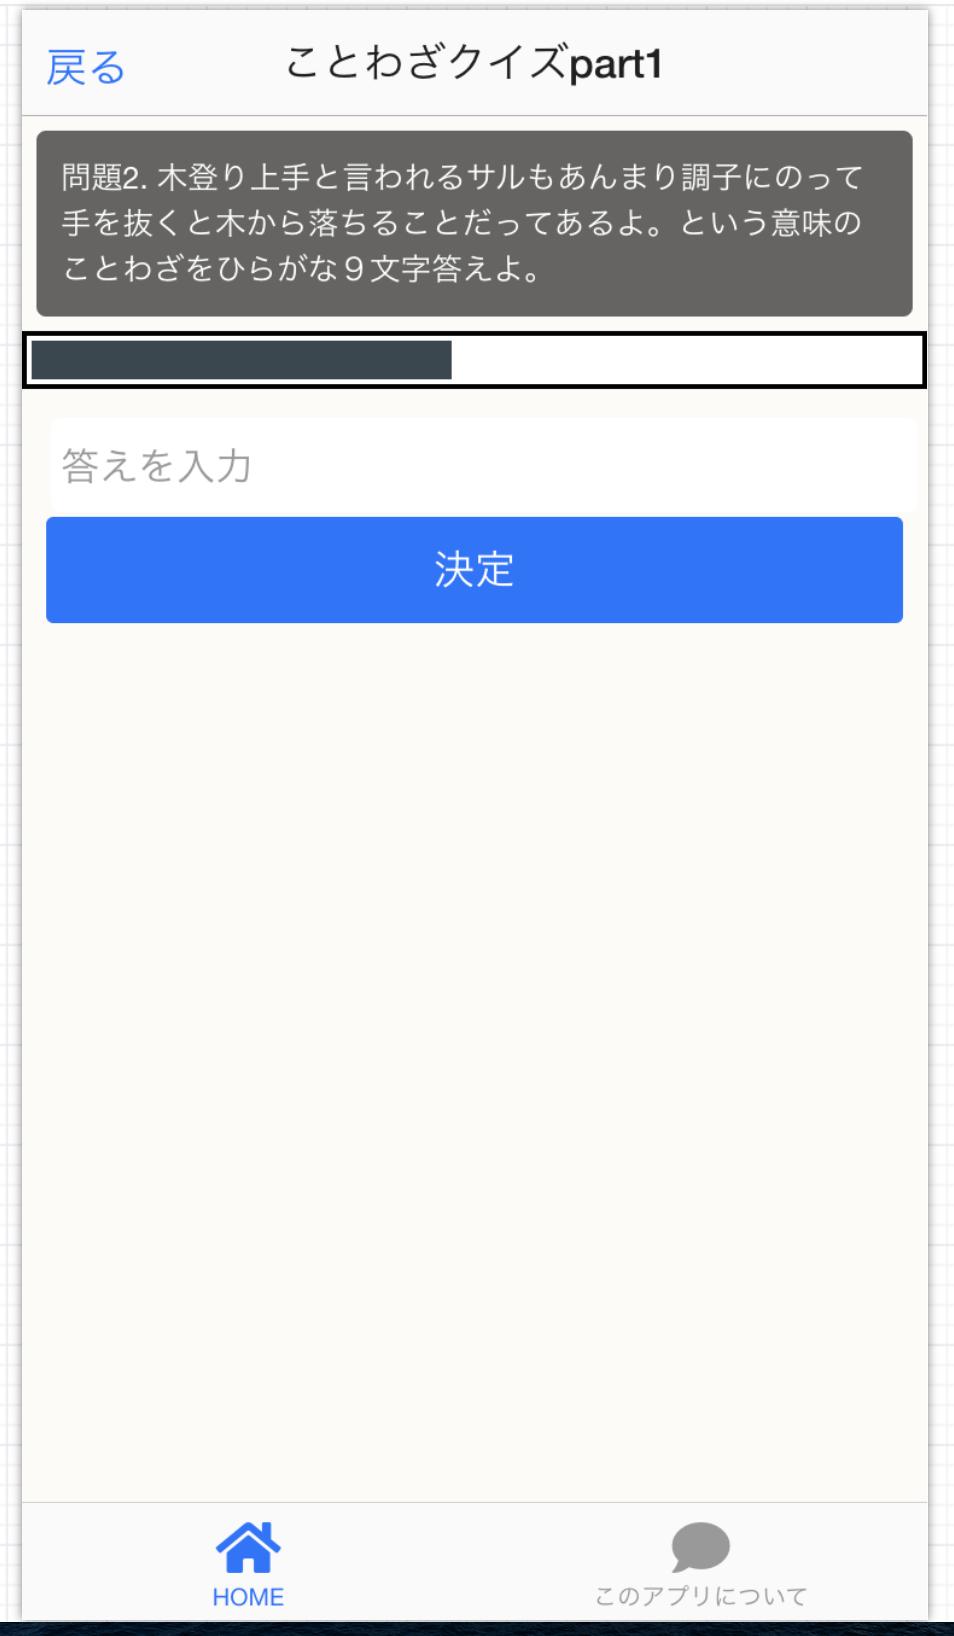 ことわざクイズアプリ For Android Apk Download